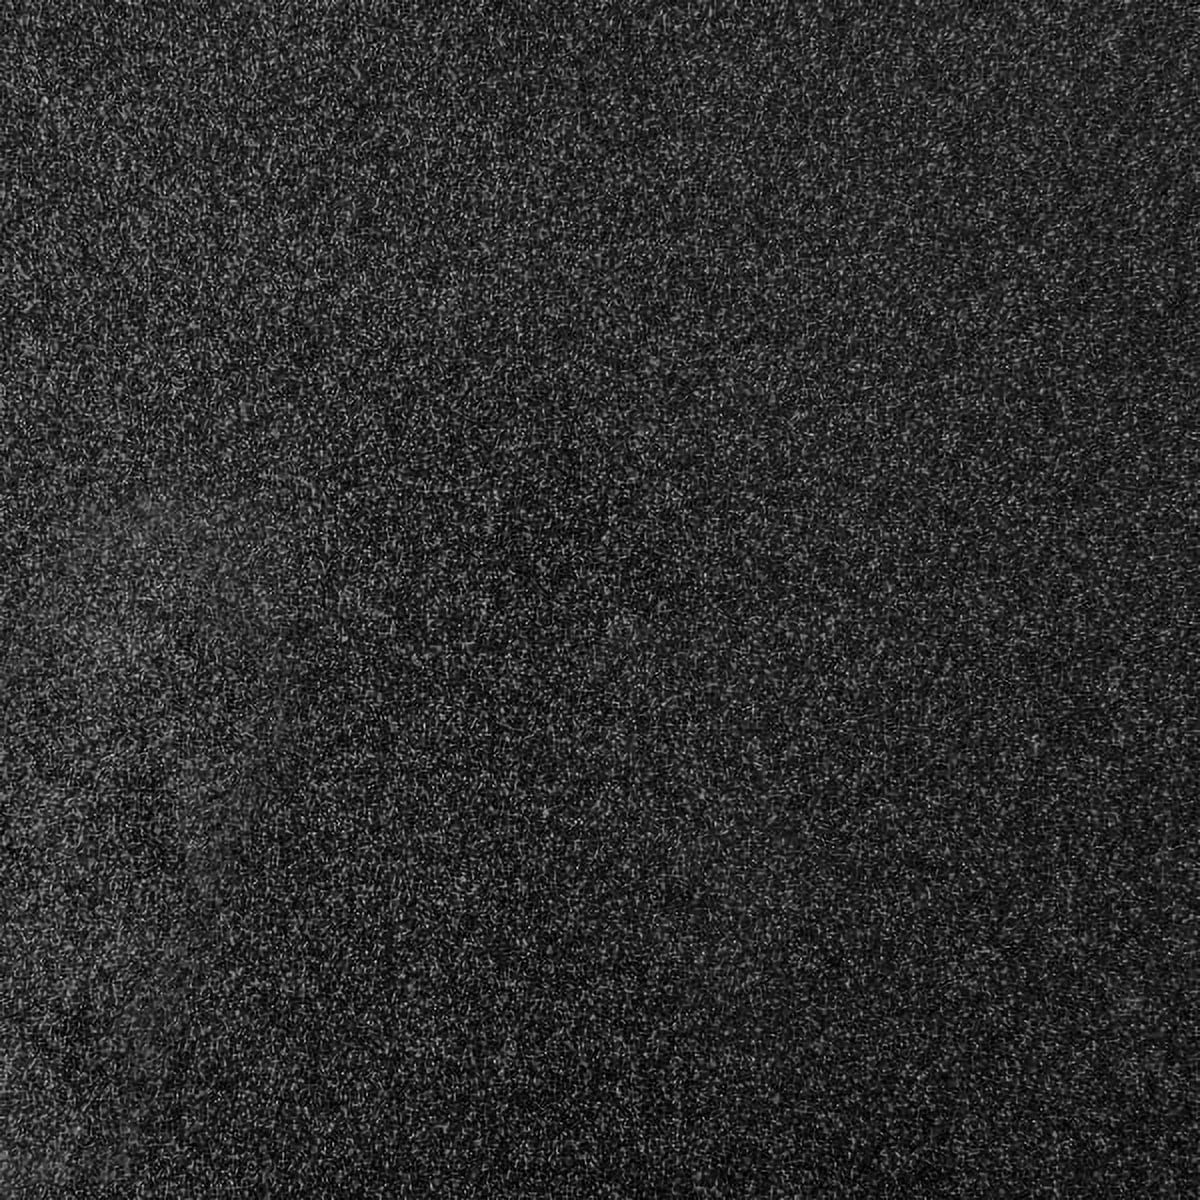 Cricut® Smart Iron-On Vinyl Glitter (9 ft) - Black, 13 x 108 